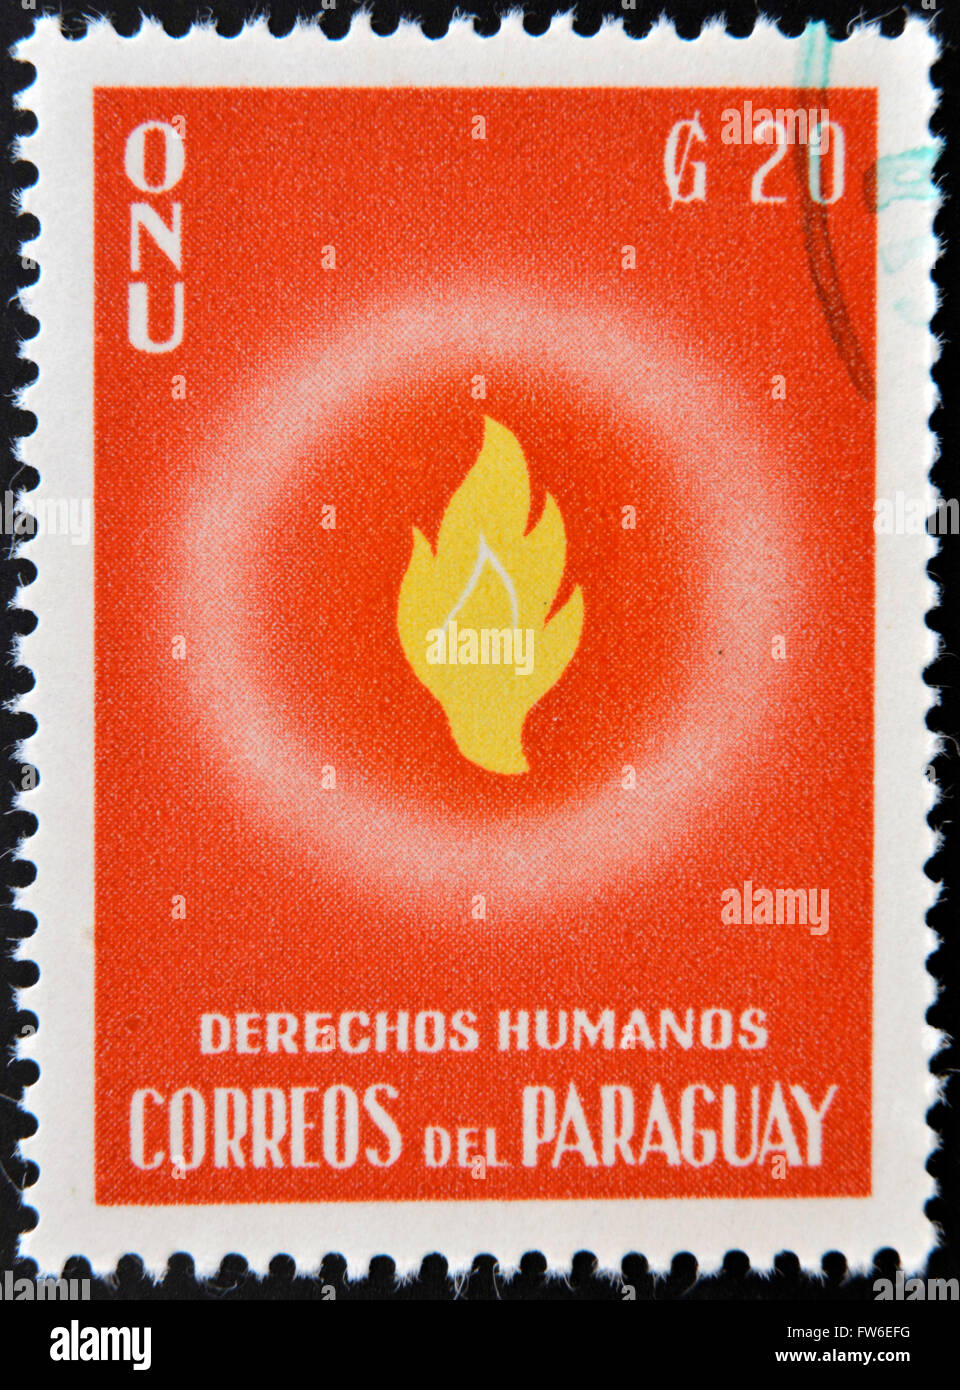 PARAGUAY - VERS 1960 : un timbre imprimé en Paraguay dédié à la protection des droits de l'homme par l'Organisation des Nations Unies, vers 1960 Banque D'Images